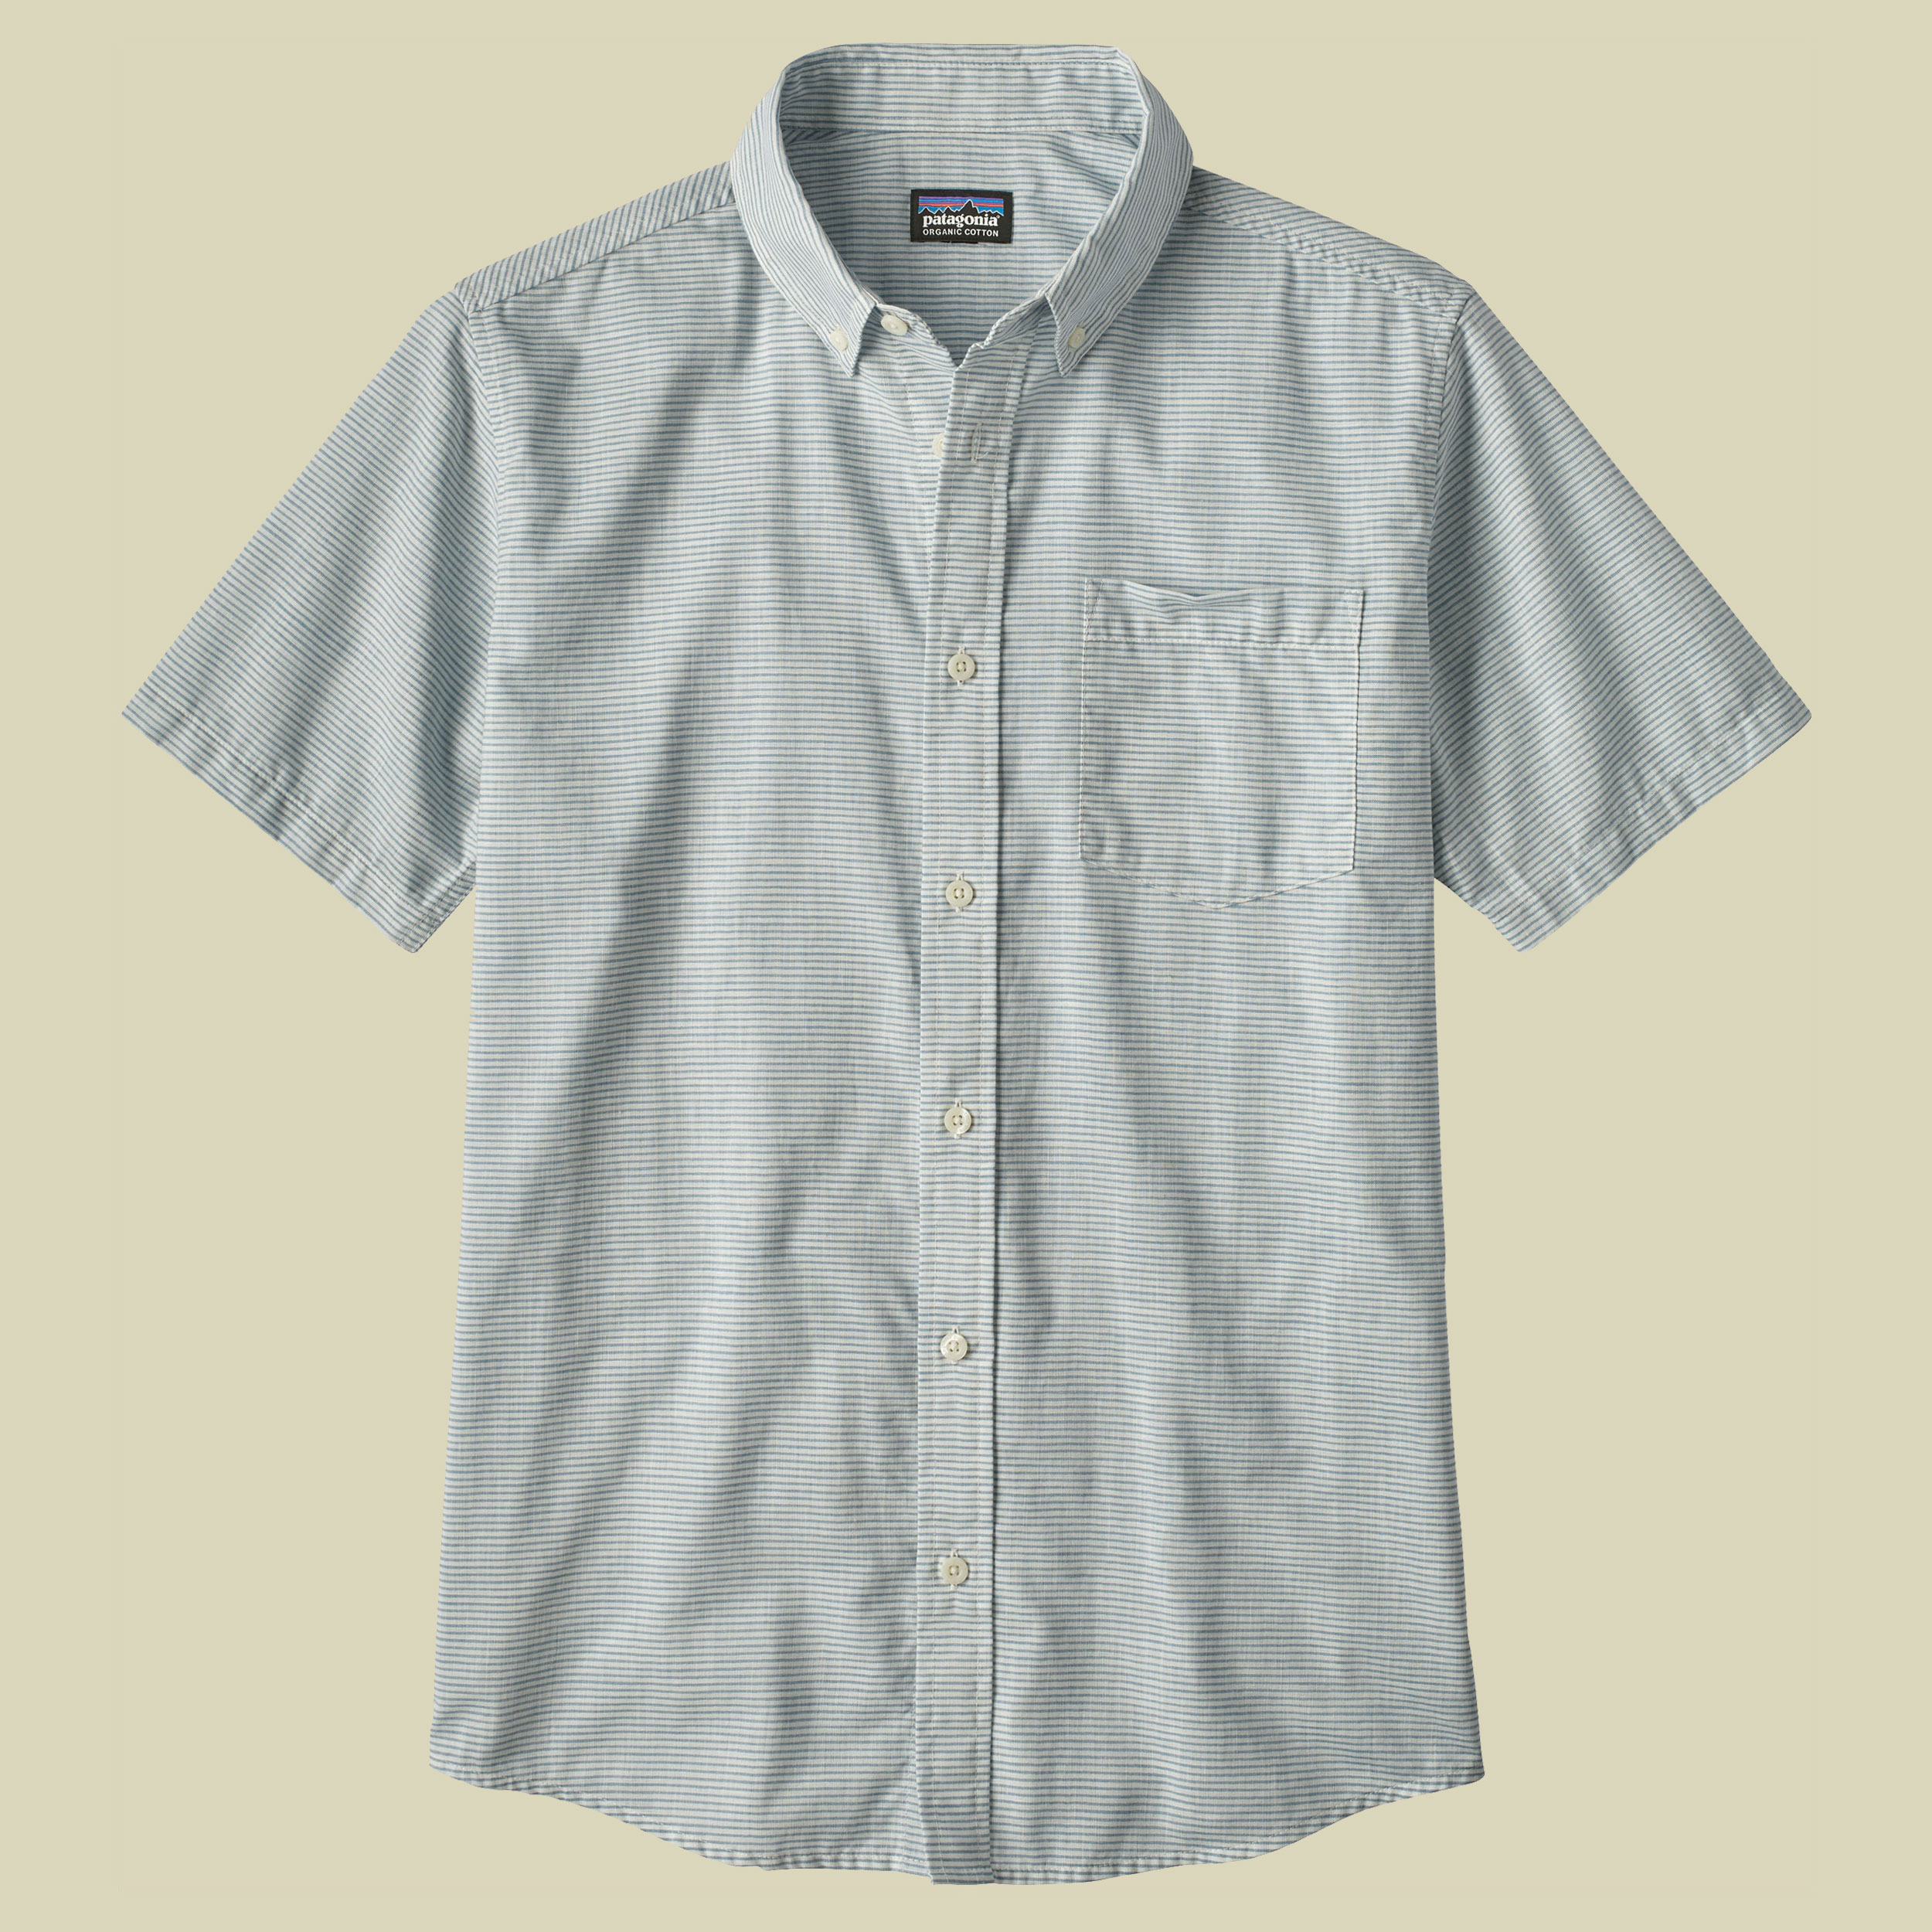 Bluffside LW Shirt Men Größe S Farbe jib stripe:railroad blue